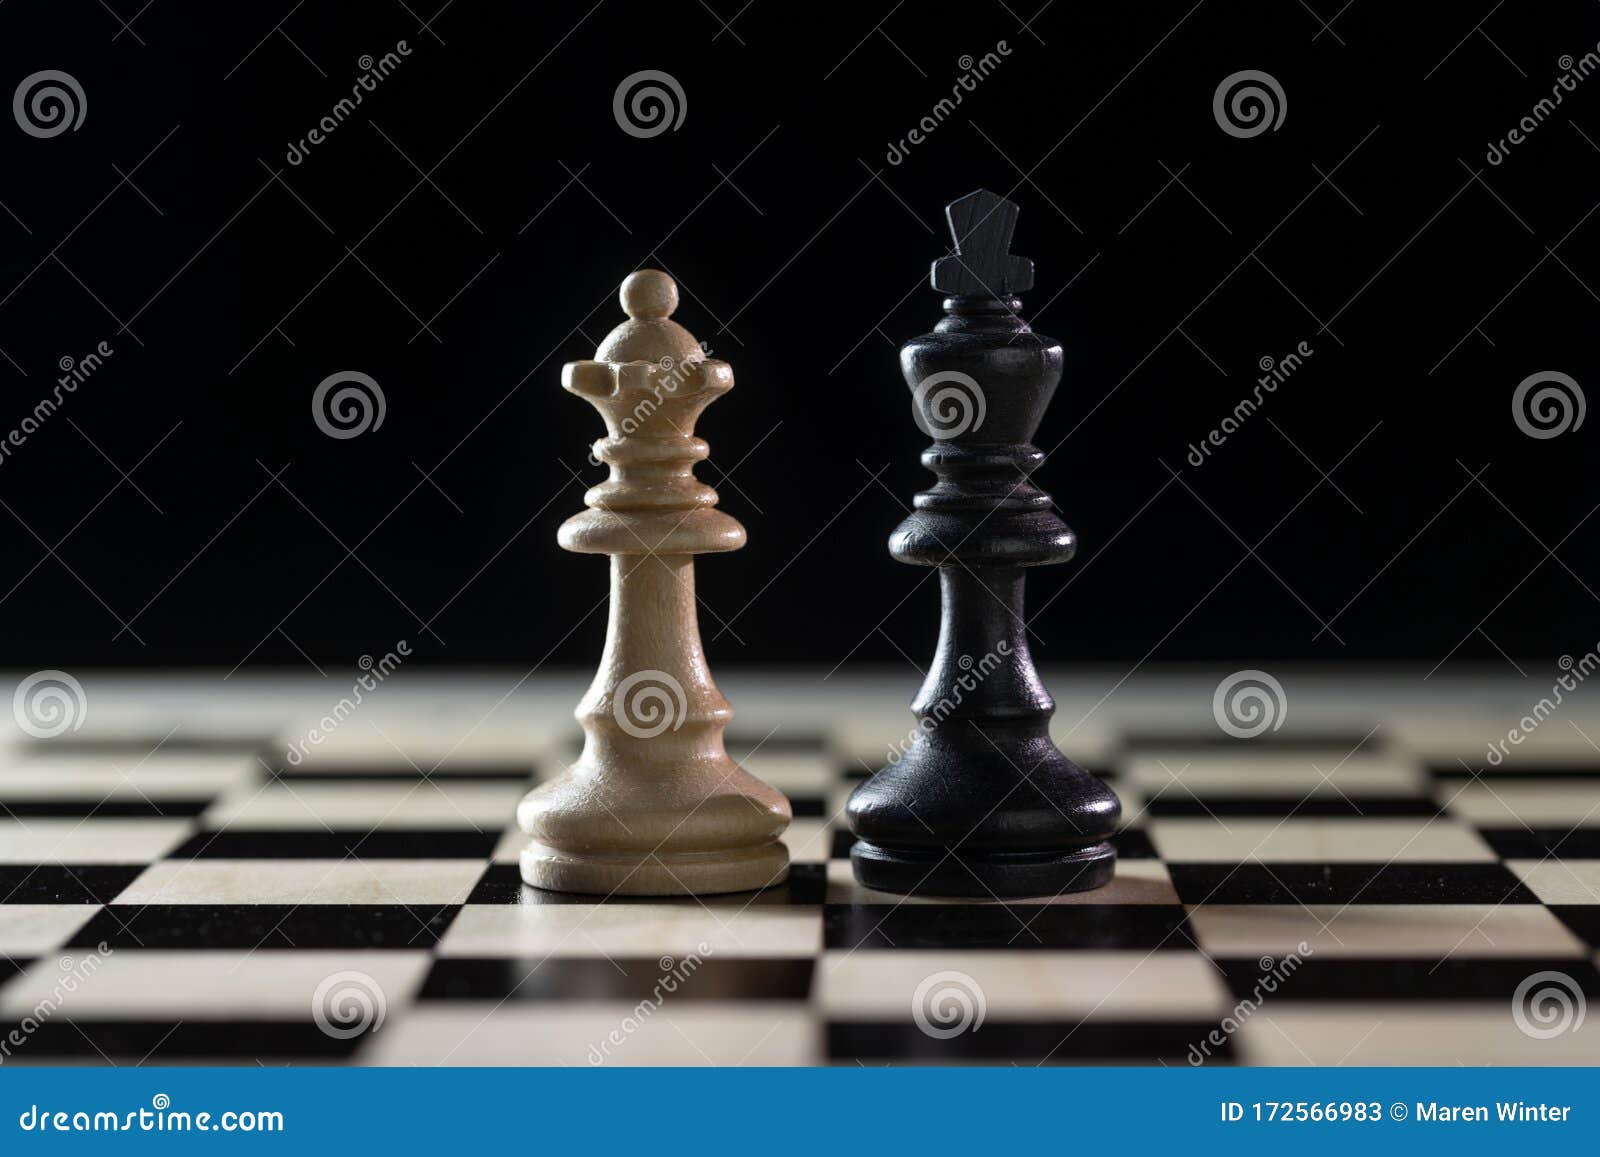 Juego de 2 piezas de ajedrez, peones de ajedrez, juego de ajedrez para  juego de mesa de ajedrez, solo piezas y sin tablero, blanco y negro